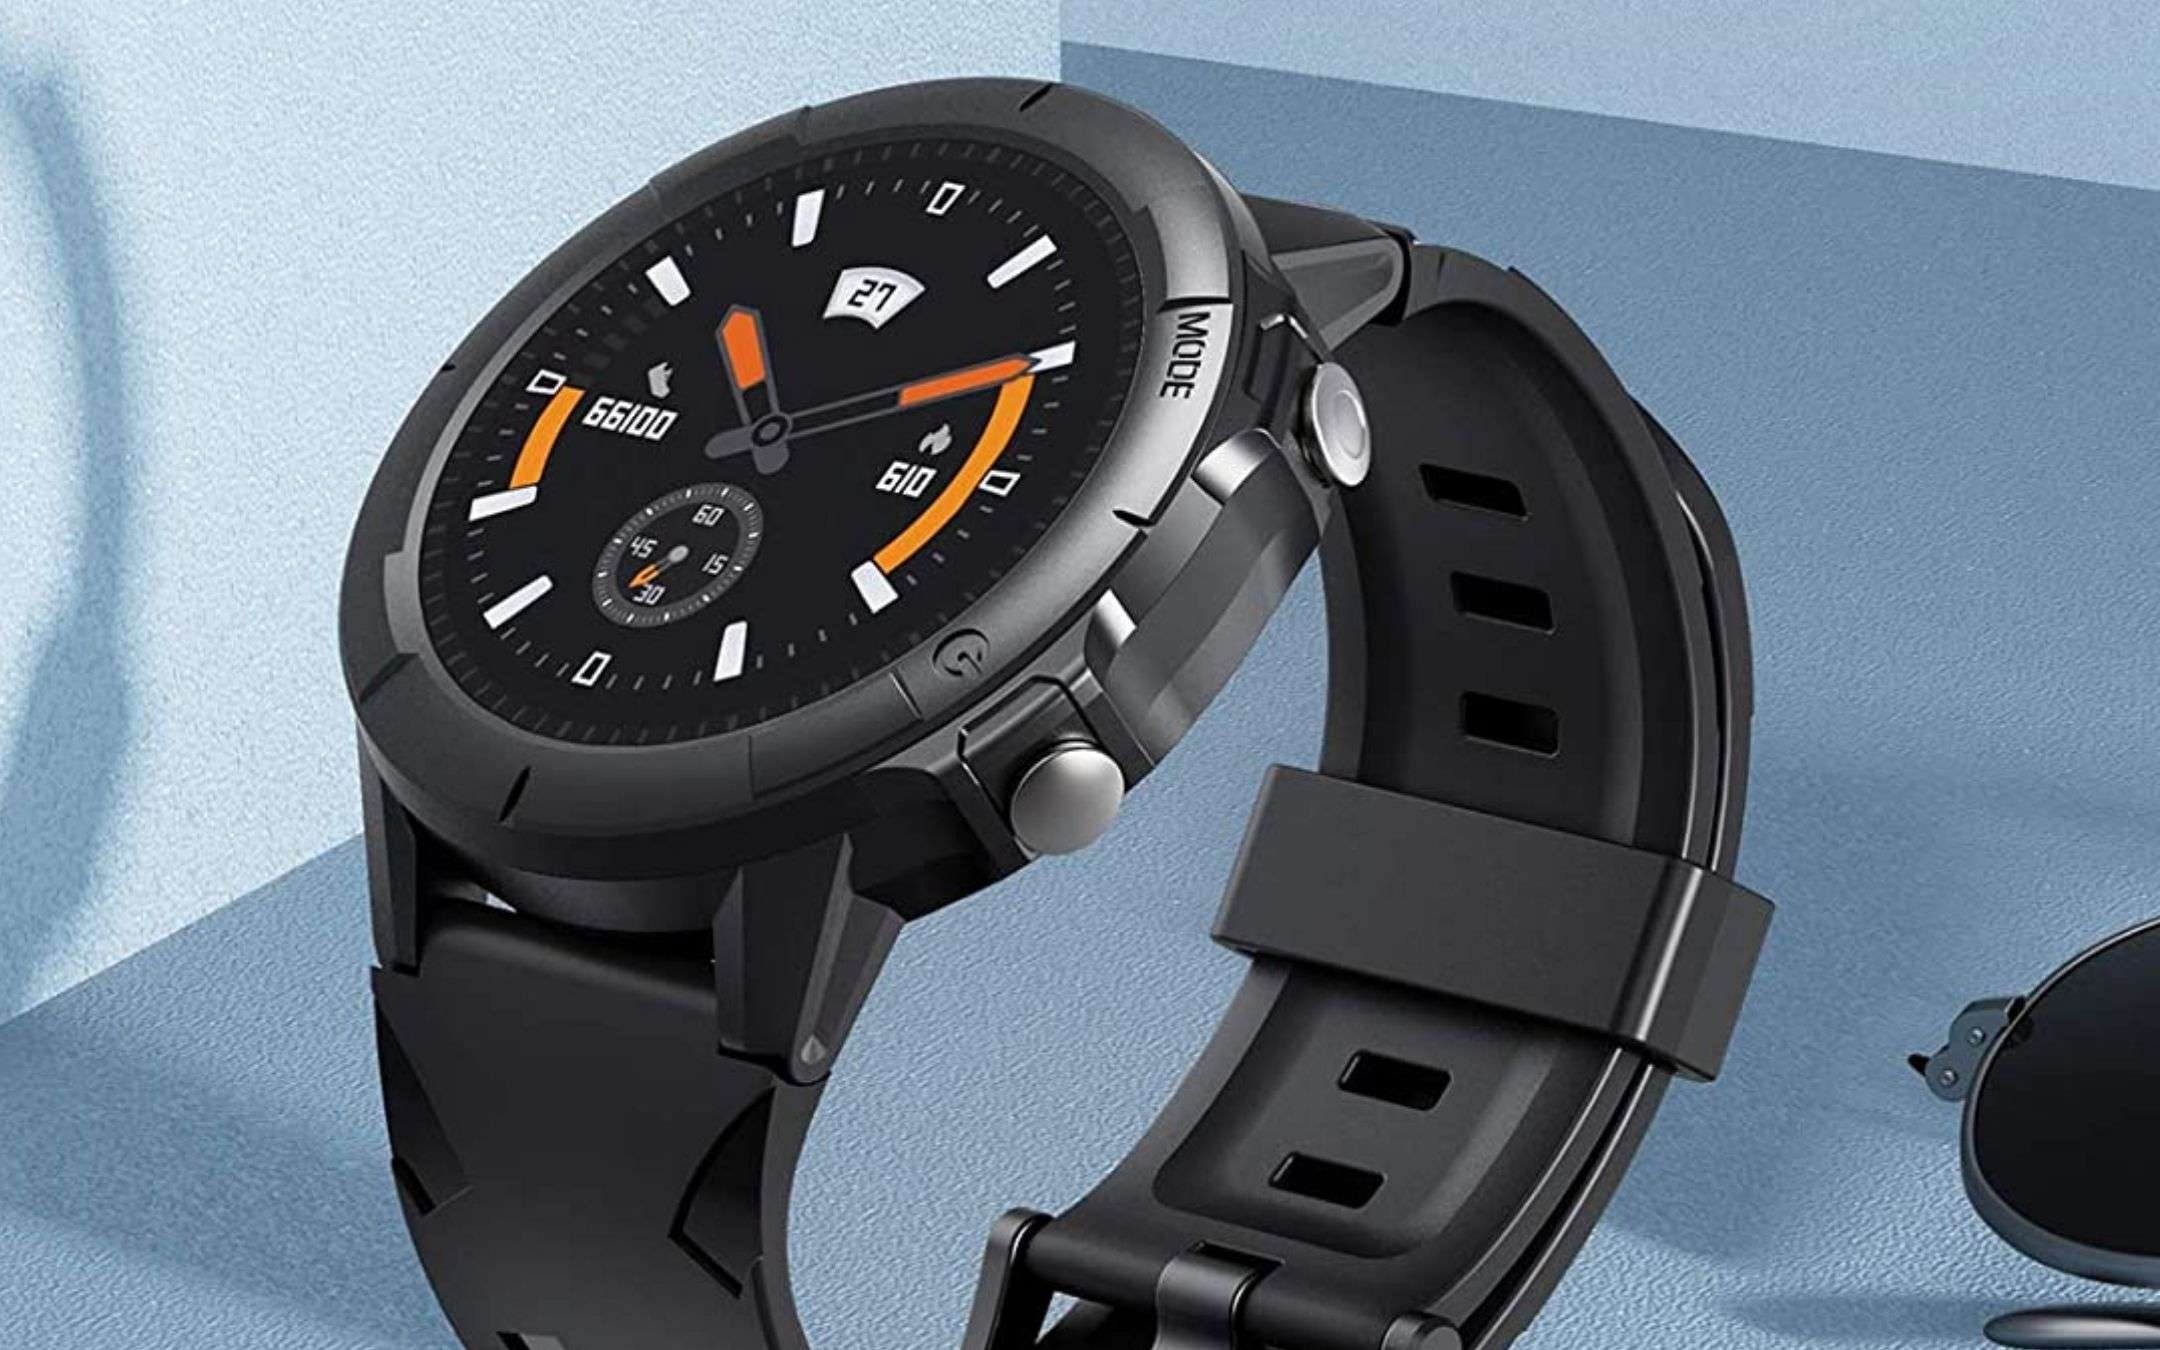 Eccezionale smartwatch a 19€: sconto Amazon 60%